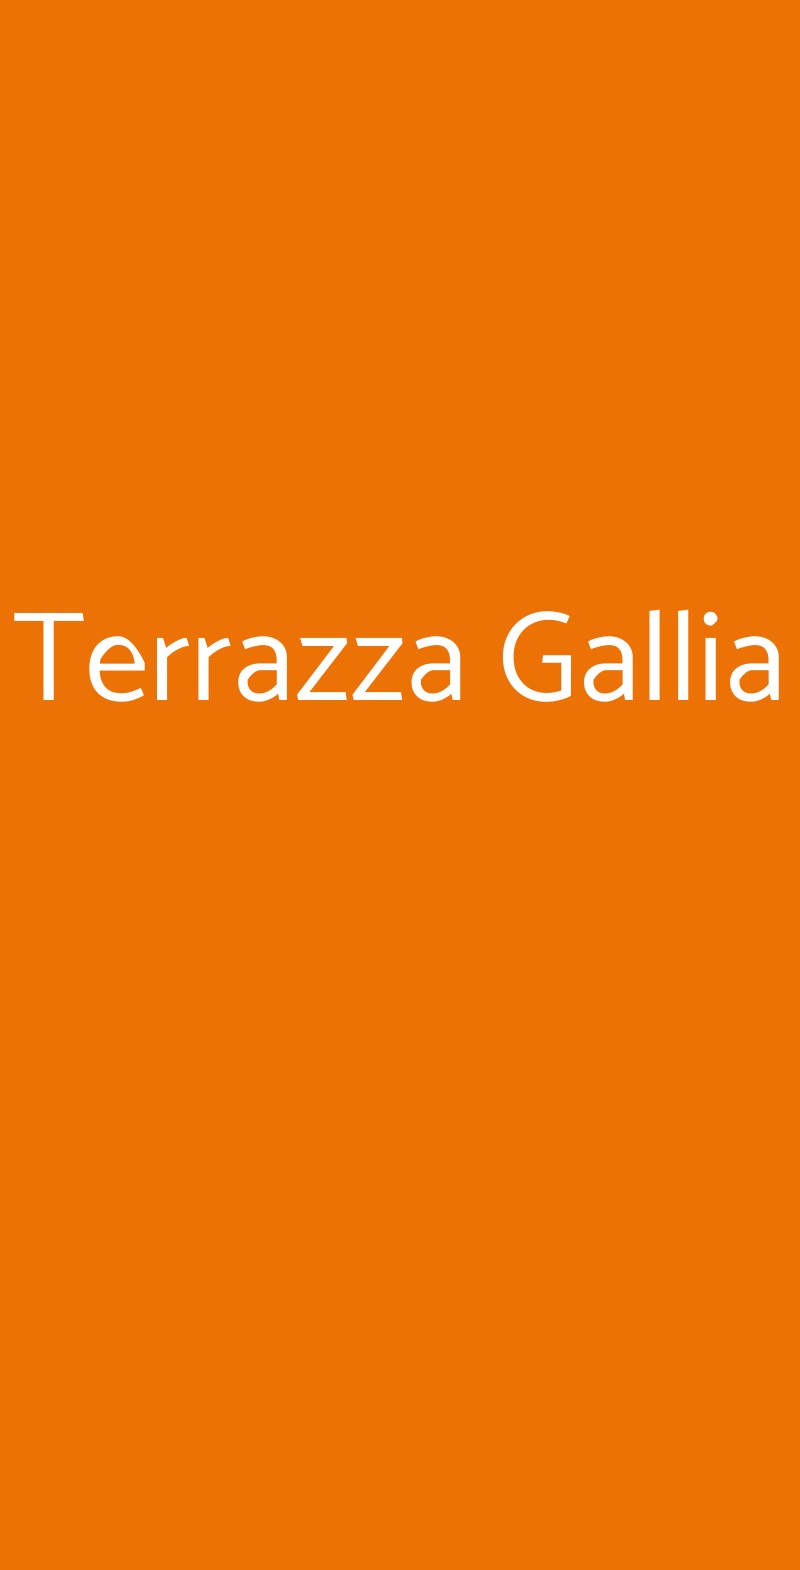 Terrazza Gallia Milano menù 1 pagina